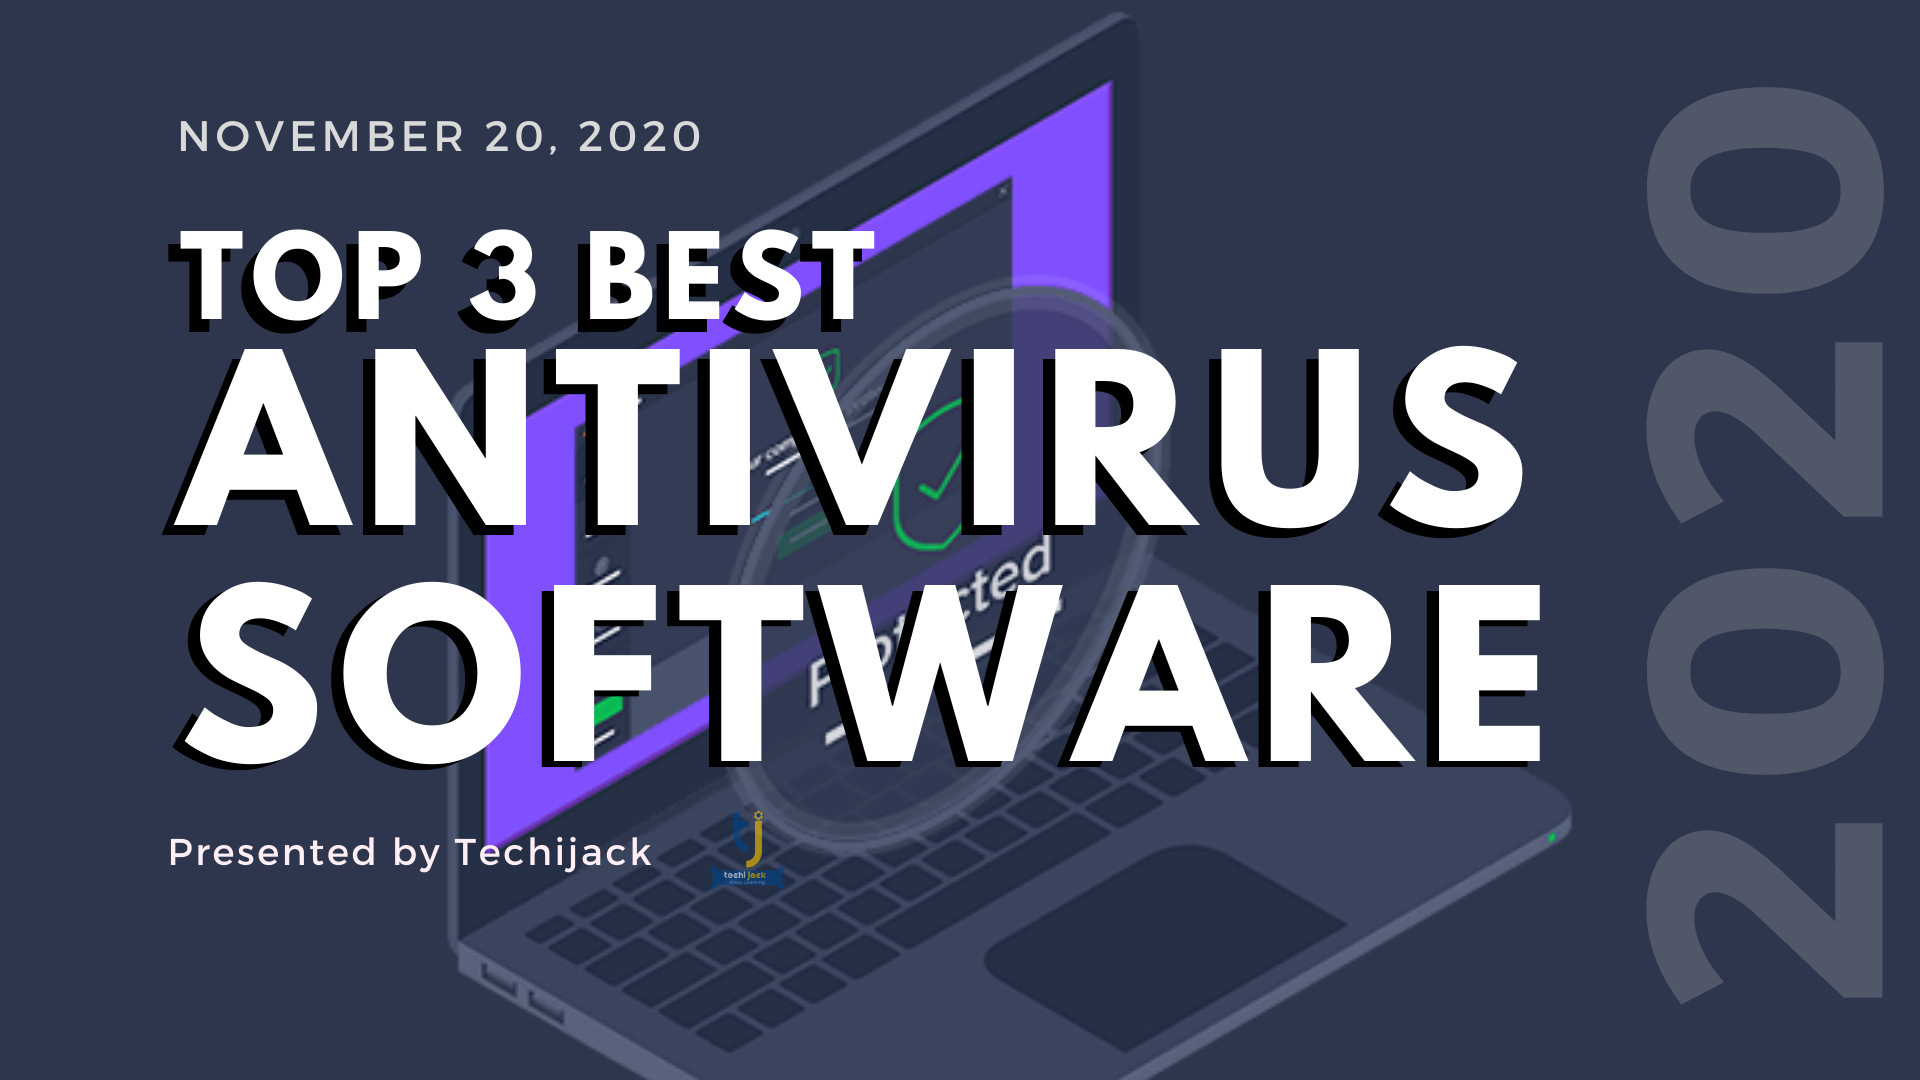 Top 3 Best Antivirus Software 2020, best antivirus software